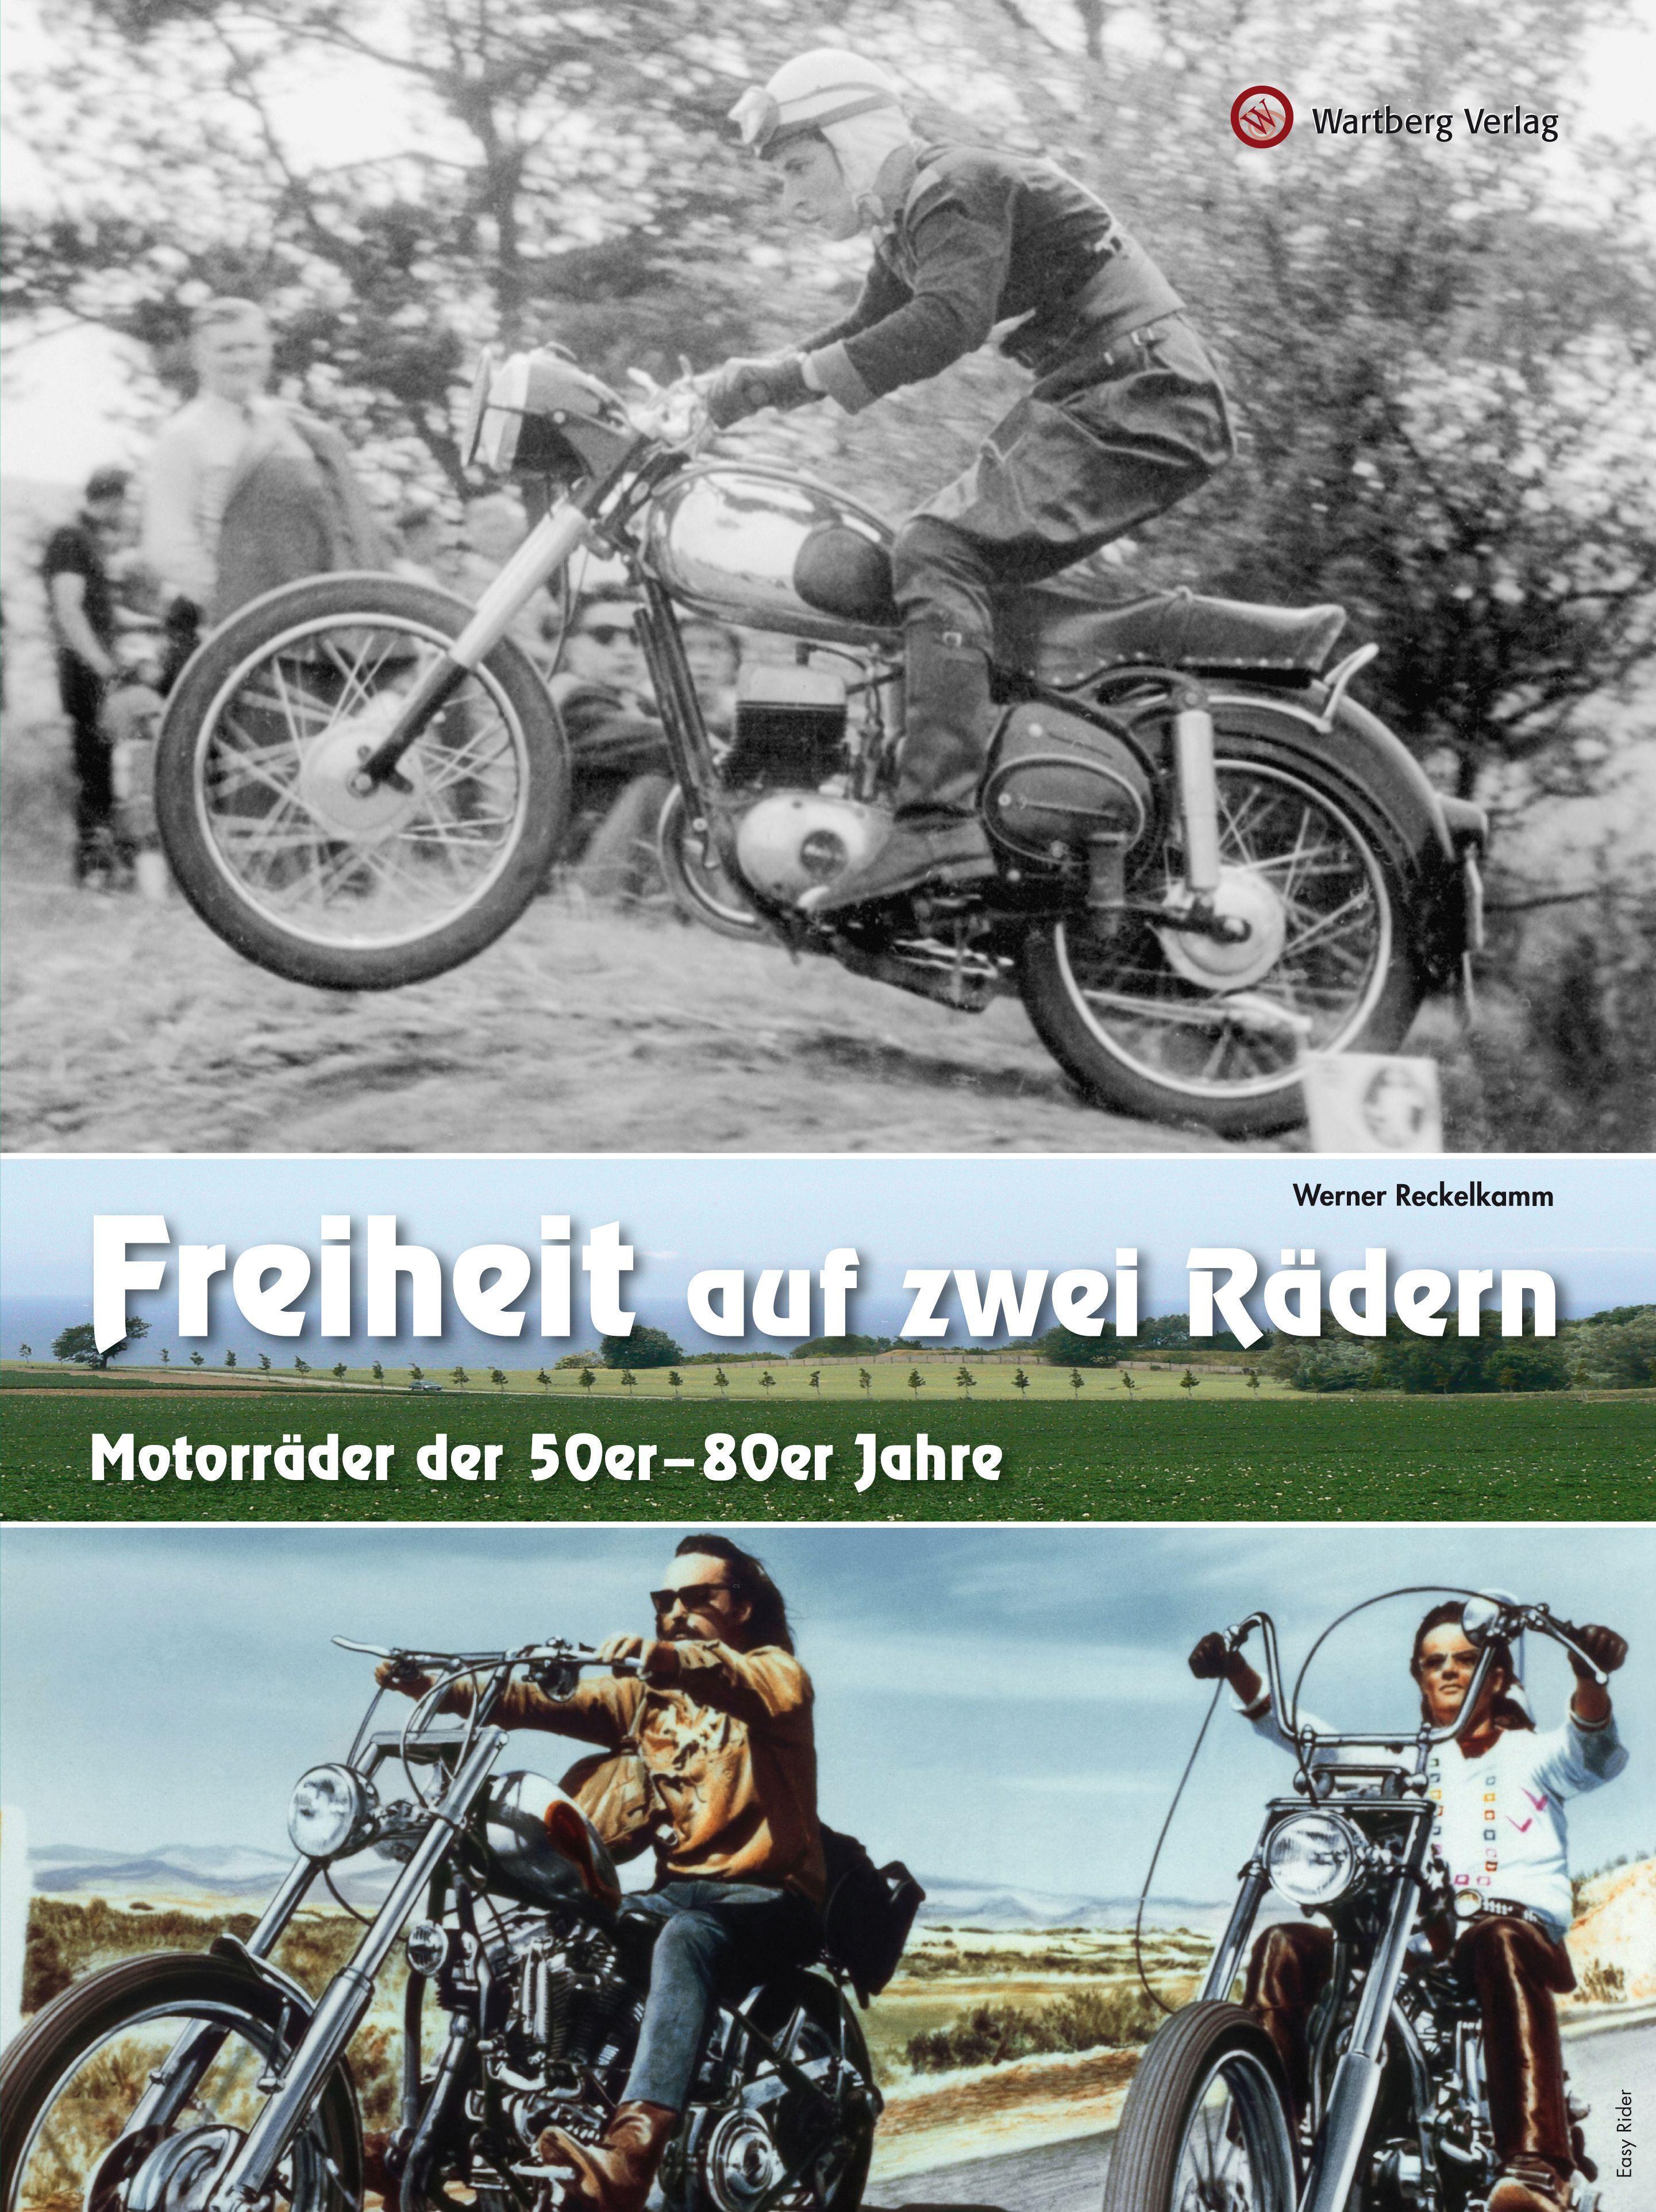 Freiheit auf zwei Rädern - Motorräder der 50er - 80er Jahre, Reckelkamm,  Werner